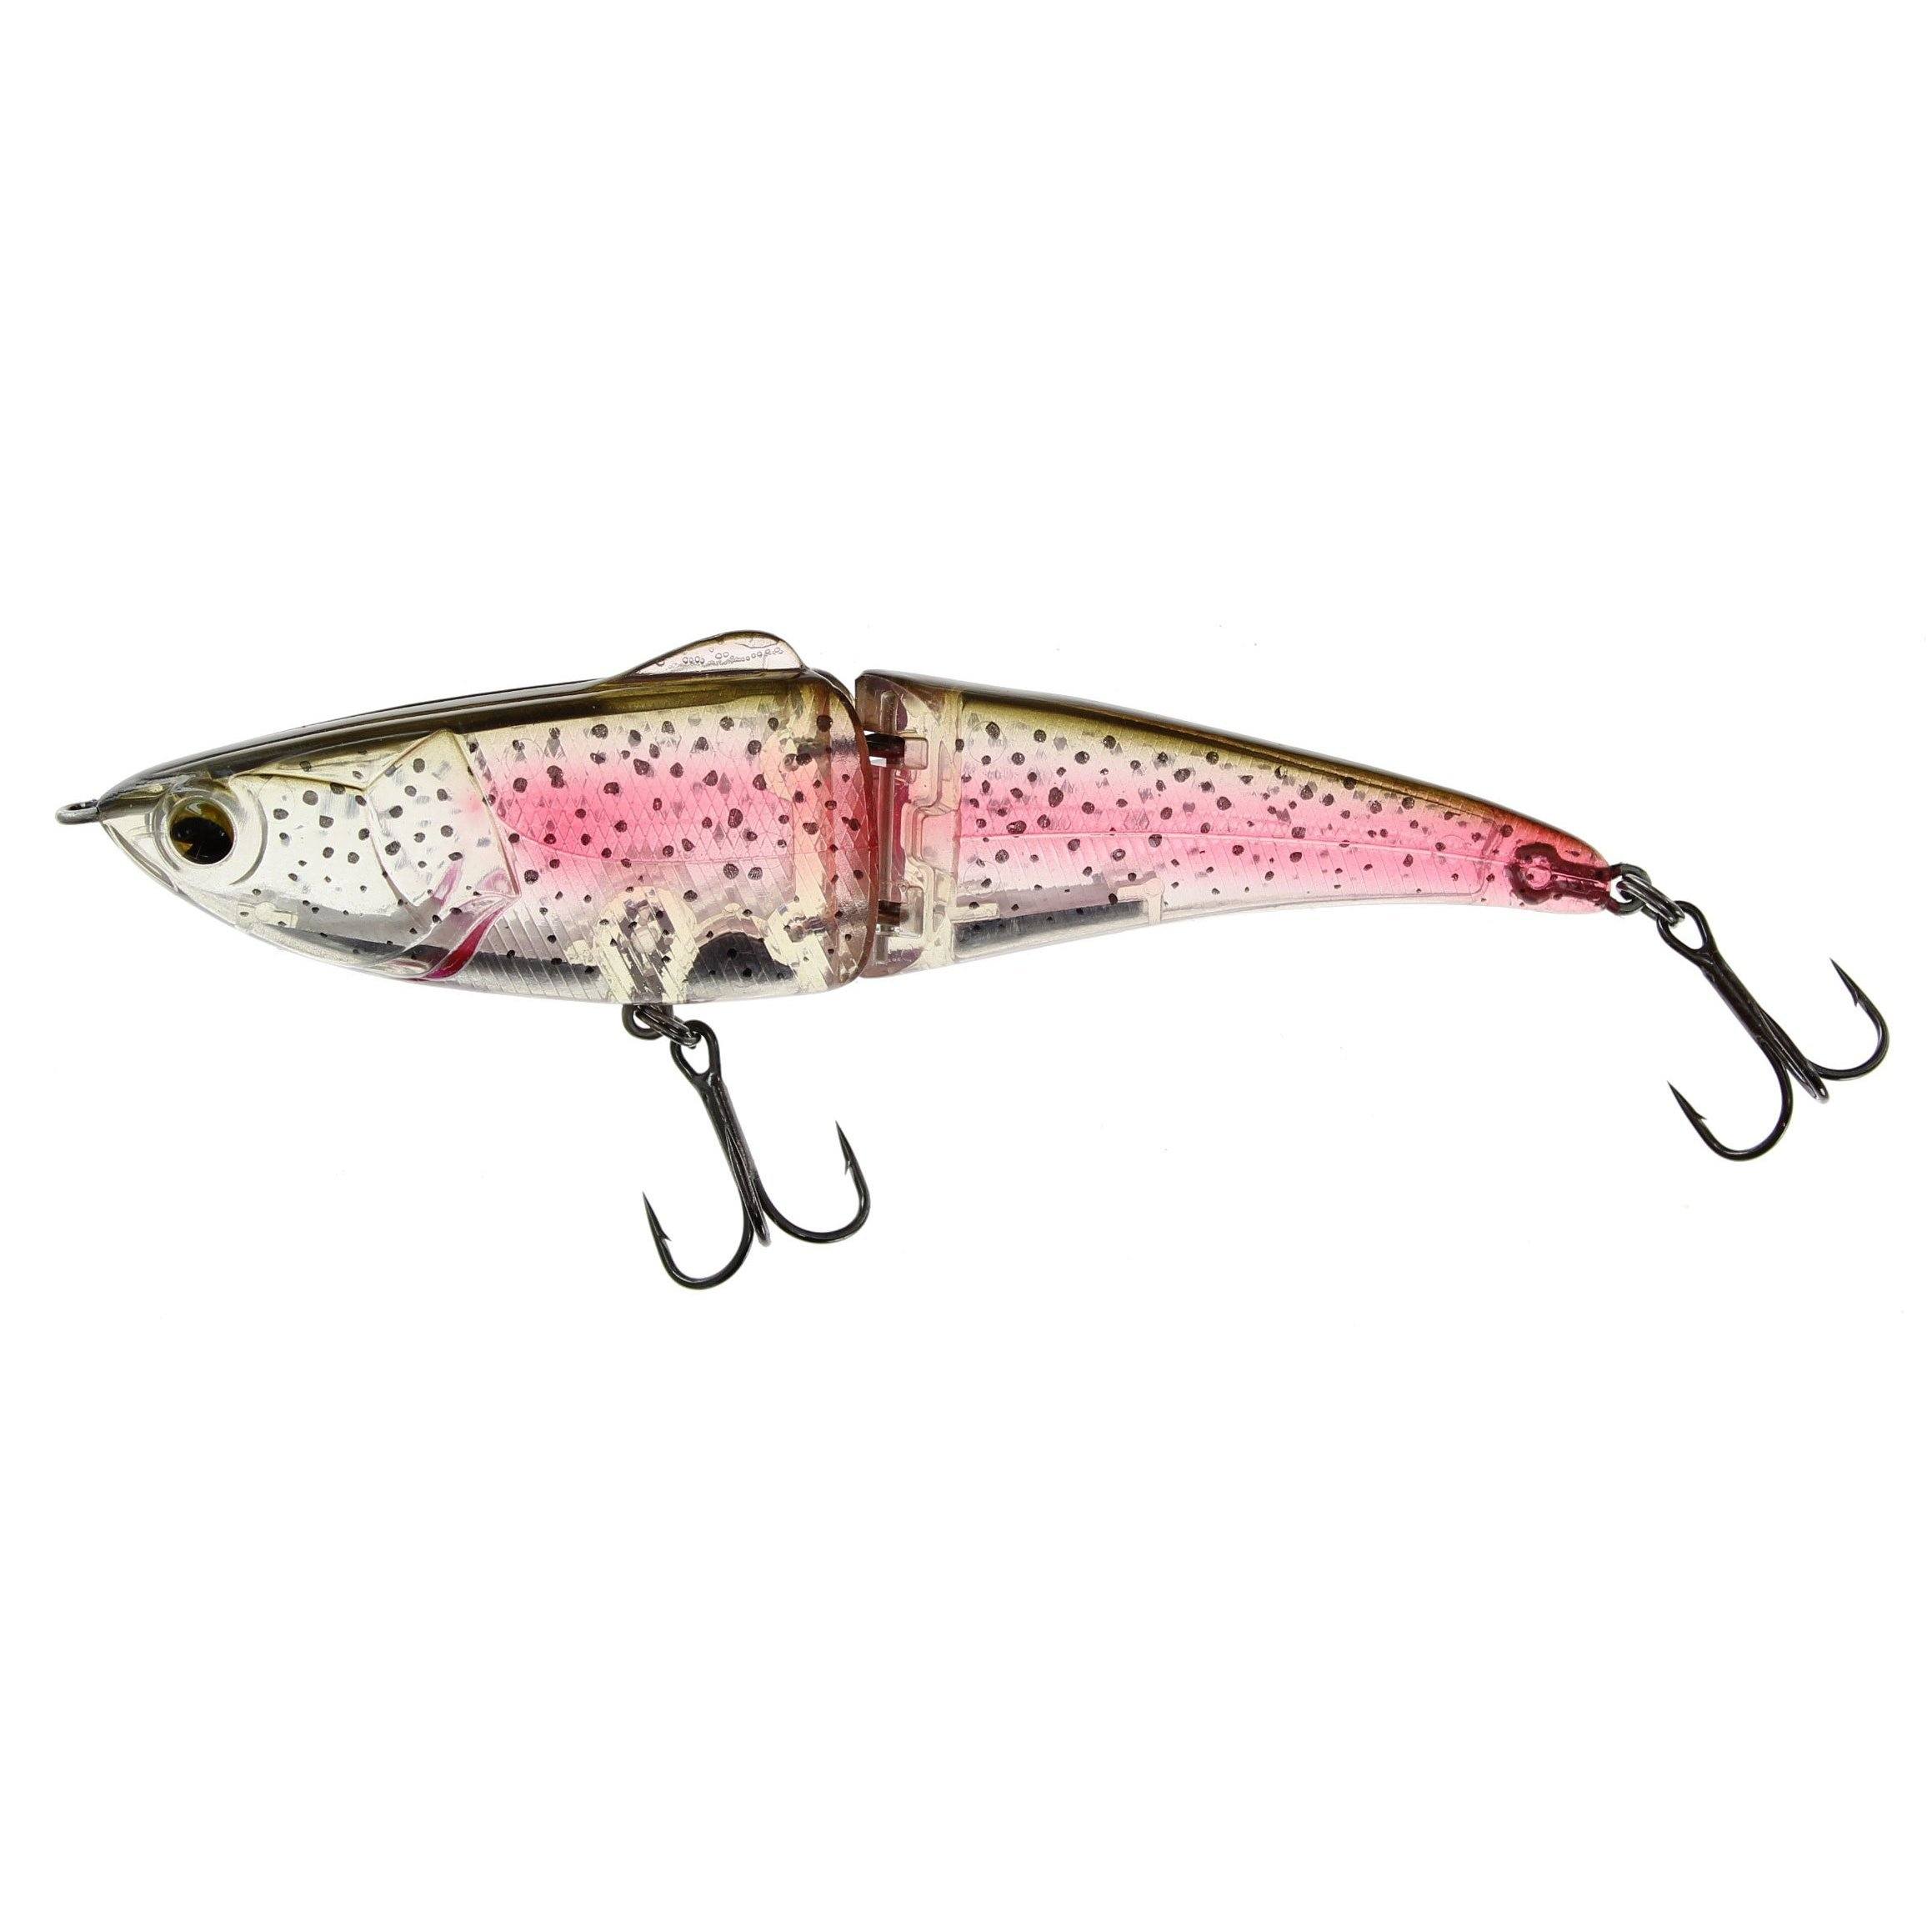 http://www.hammondsfishing.com/cdn/shop/products/Ima-Glide-Fluke-Ghost-Rainbow-Trout-125_68815c9e-ef56-4556-bbdb-4a659ea8efab.jpg?v=1637560293